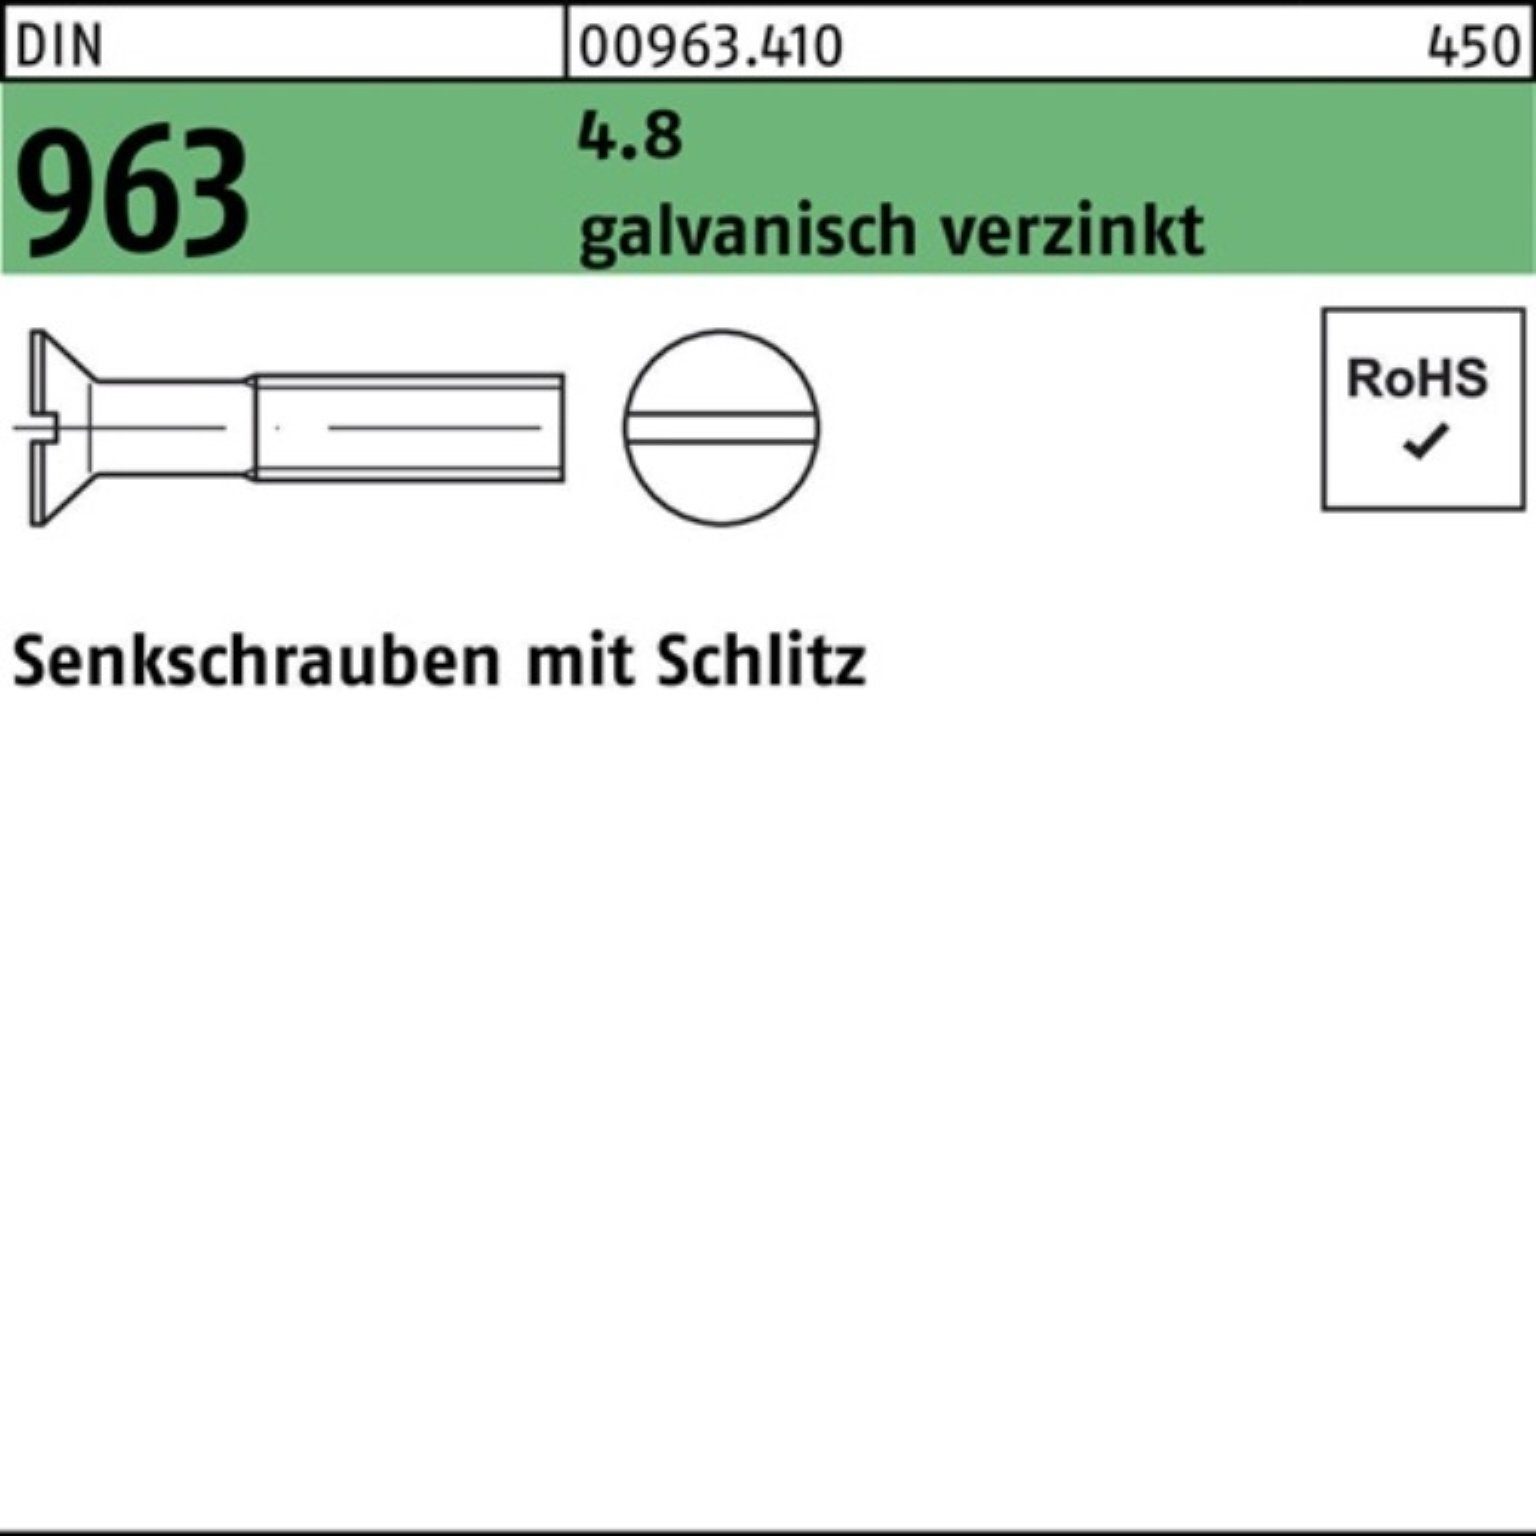 Schuhgeschäft Reyher Senkschraube DIN Senkschraube 4.8 963 200er 5 galv.verz. Schlitz M2x 200 Pack Stüc